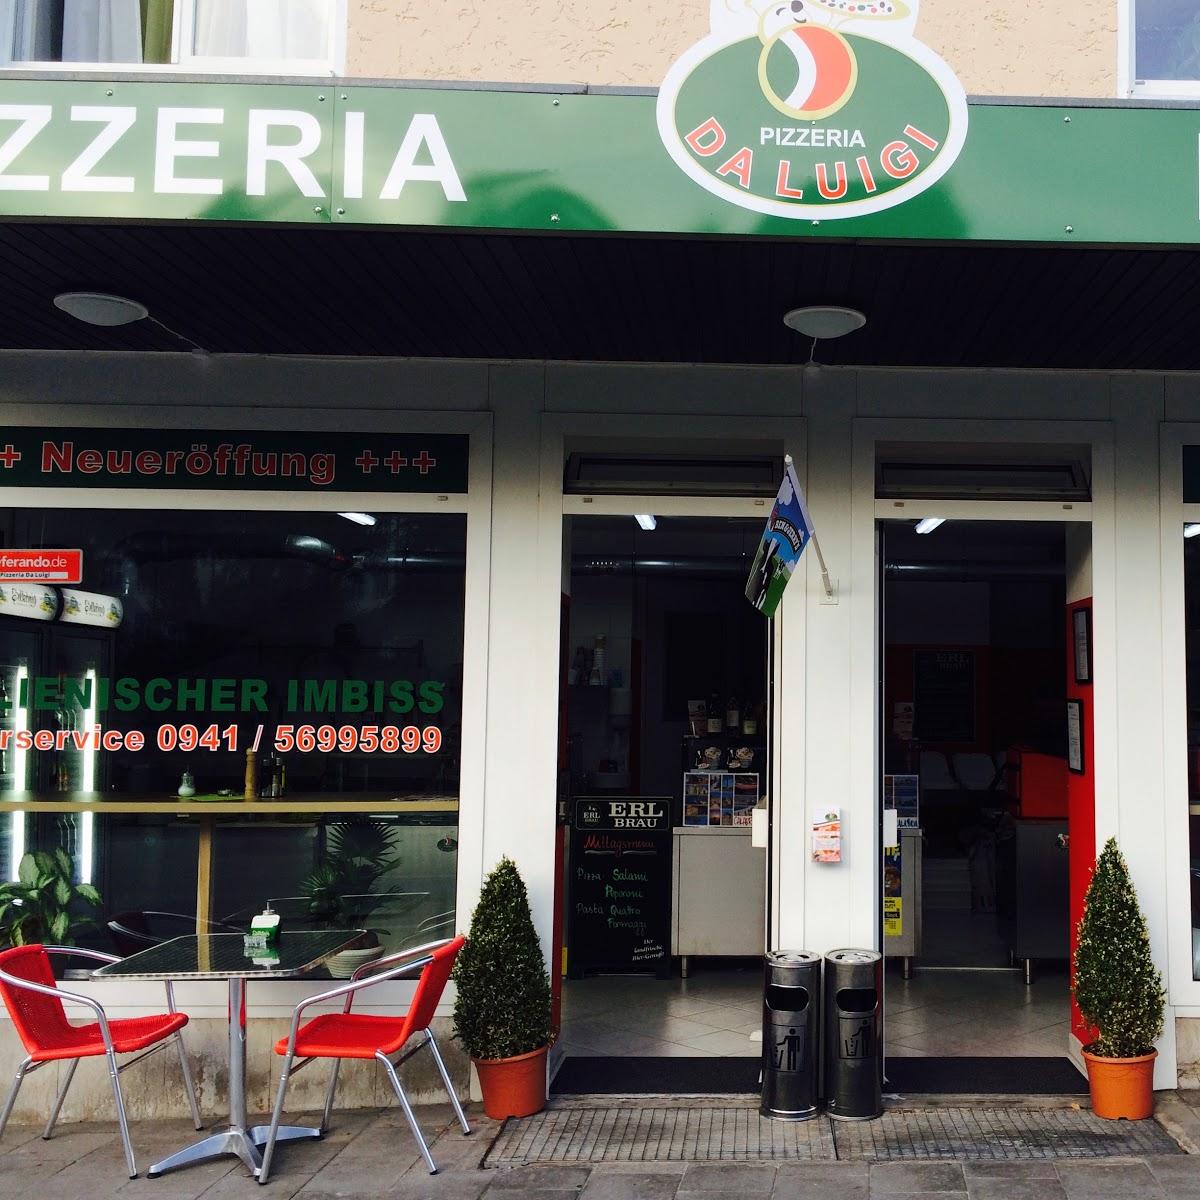 Restaurant "Pizzeria Da Luigi Lieferservice" in Regensburg